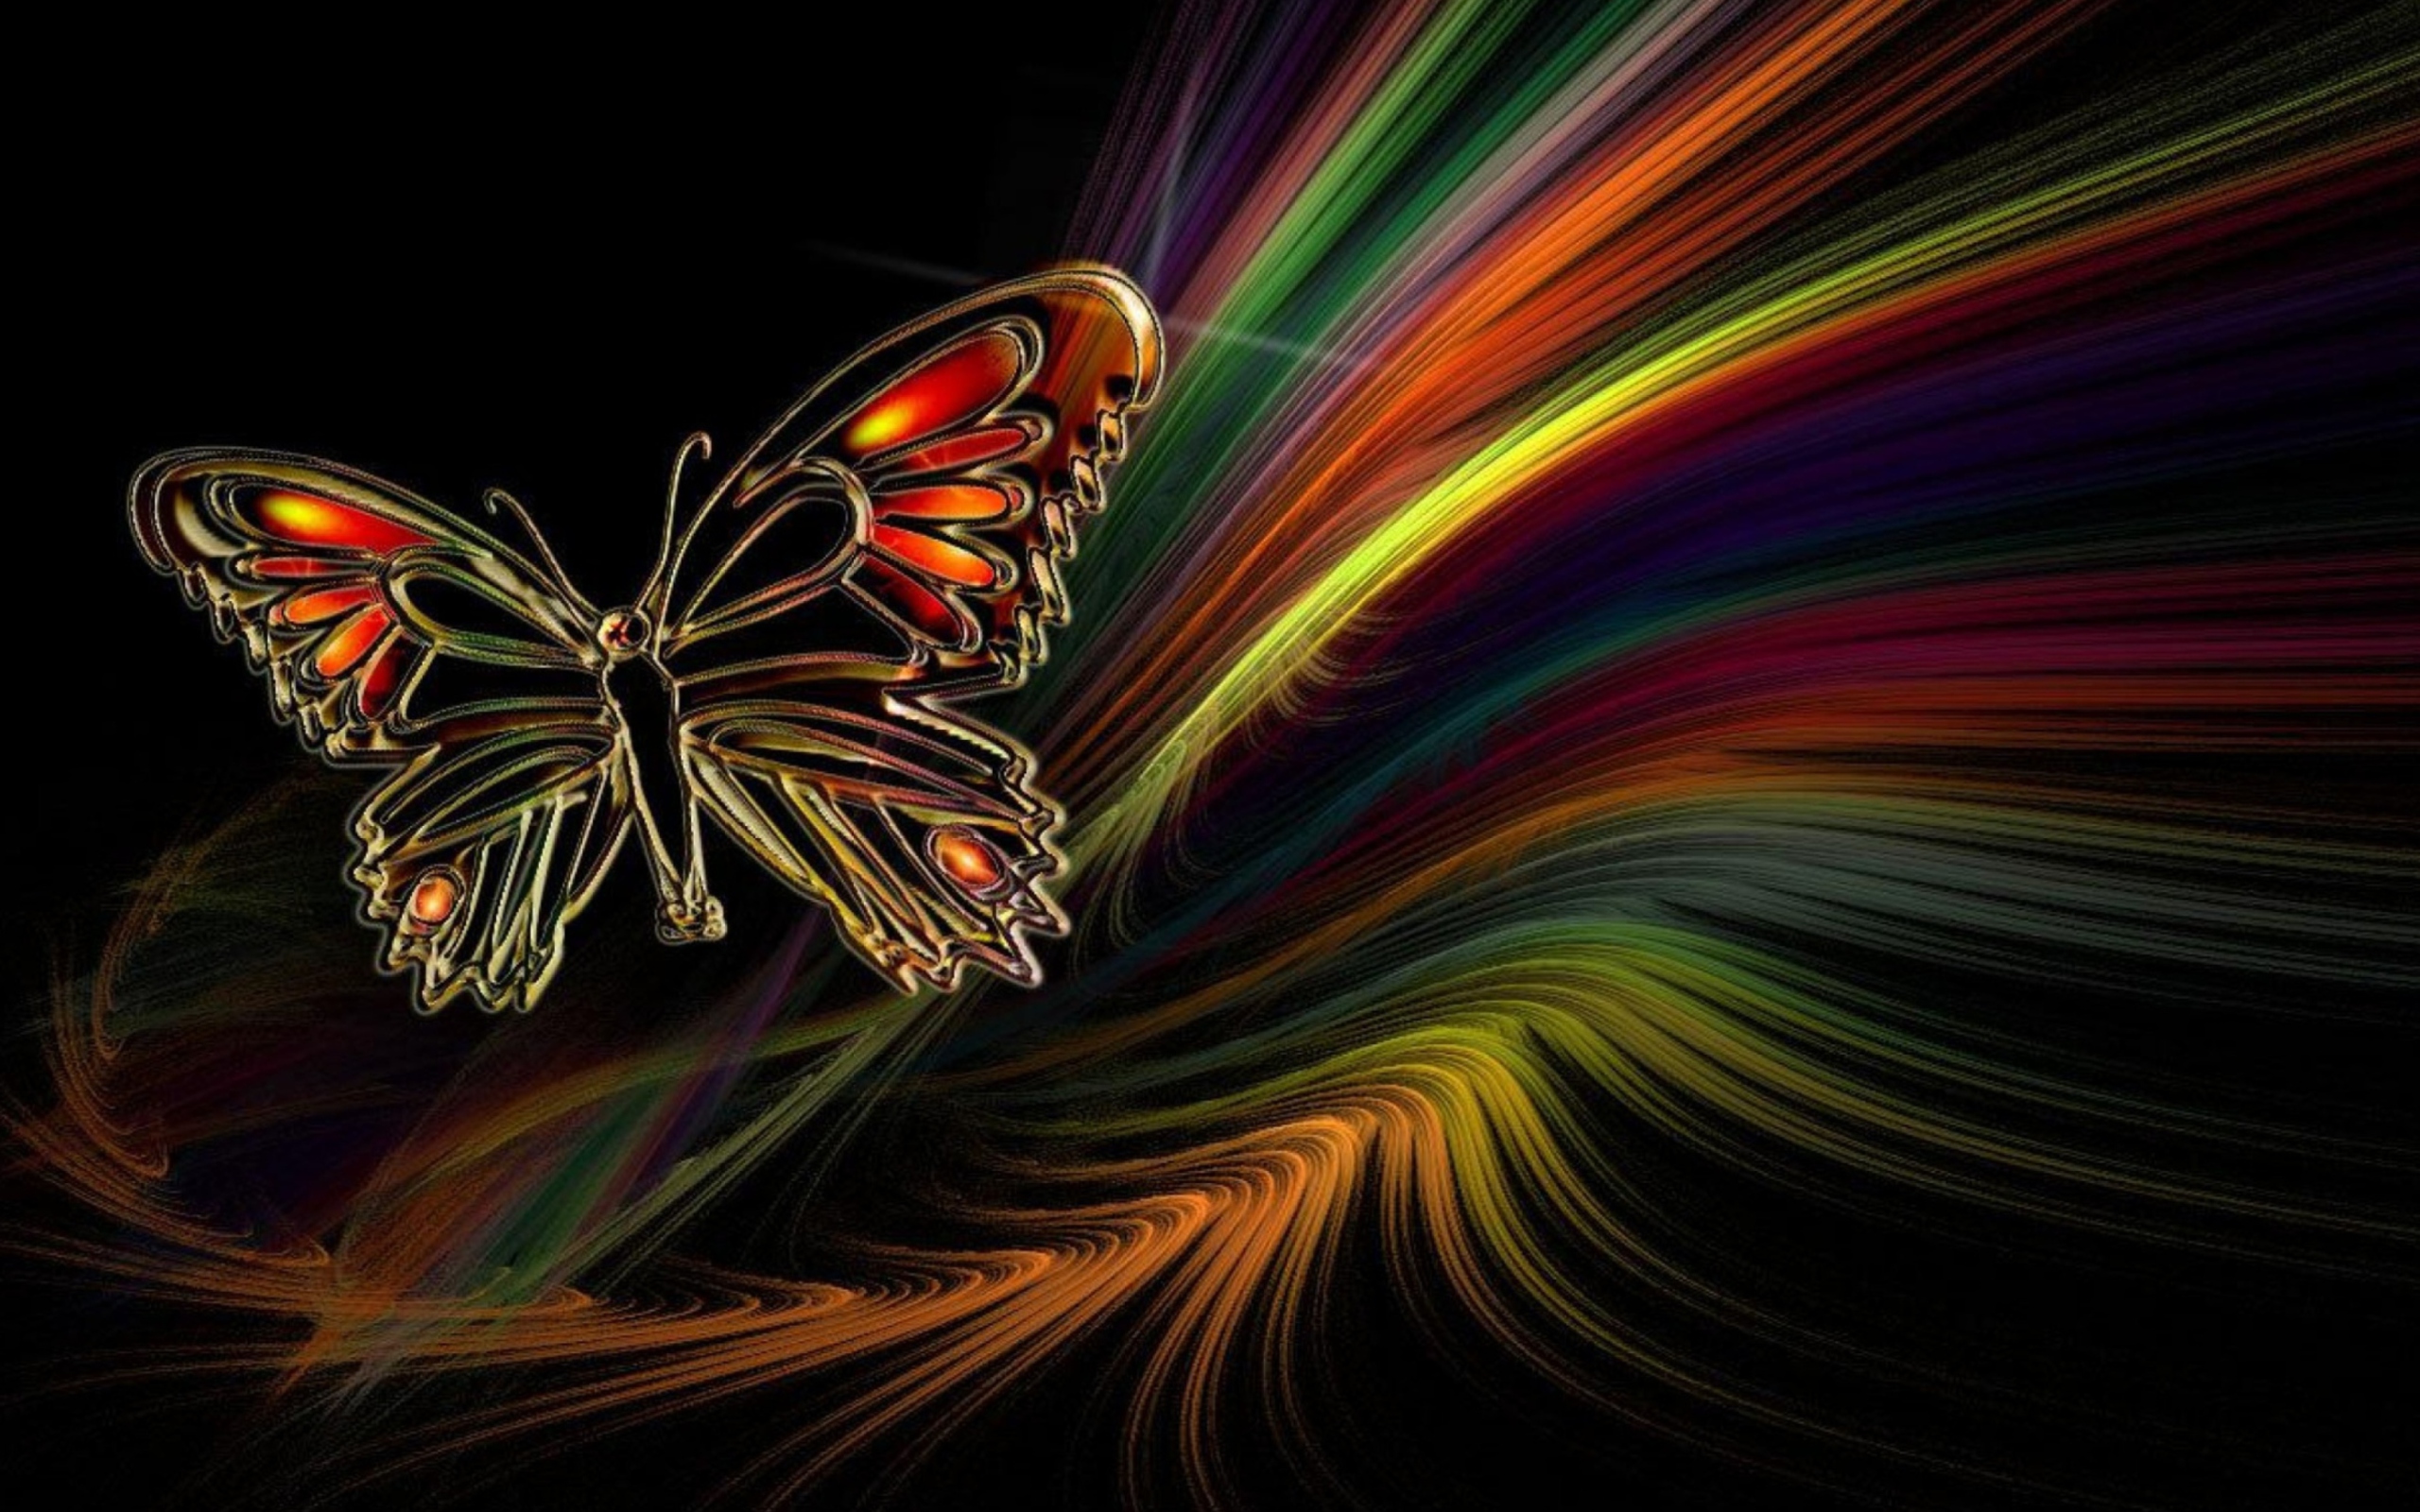 Das Abstract Butterfly Wallpaper 2560x1600